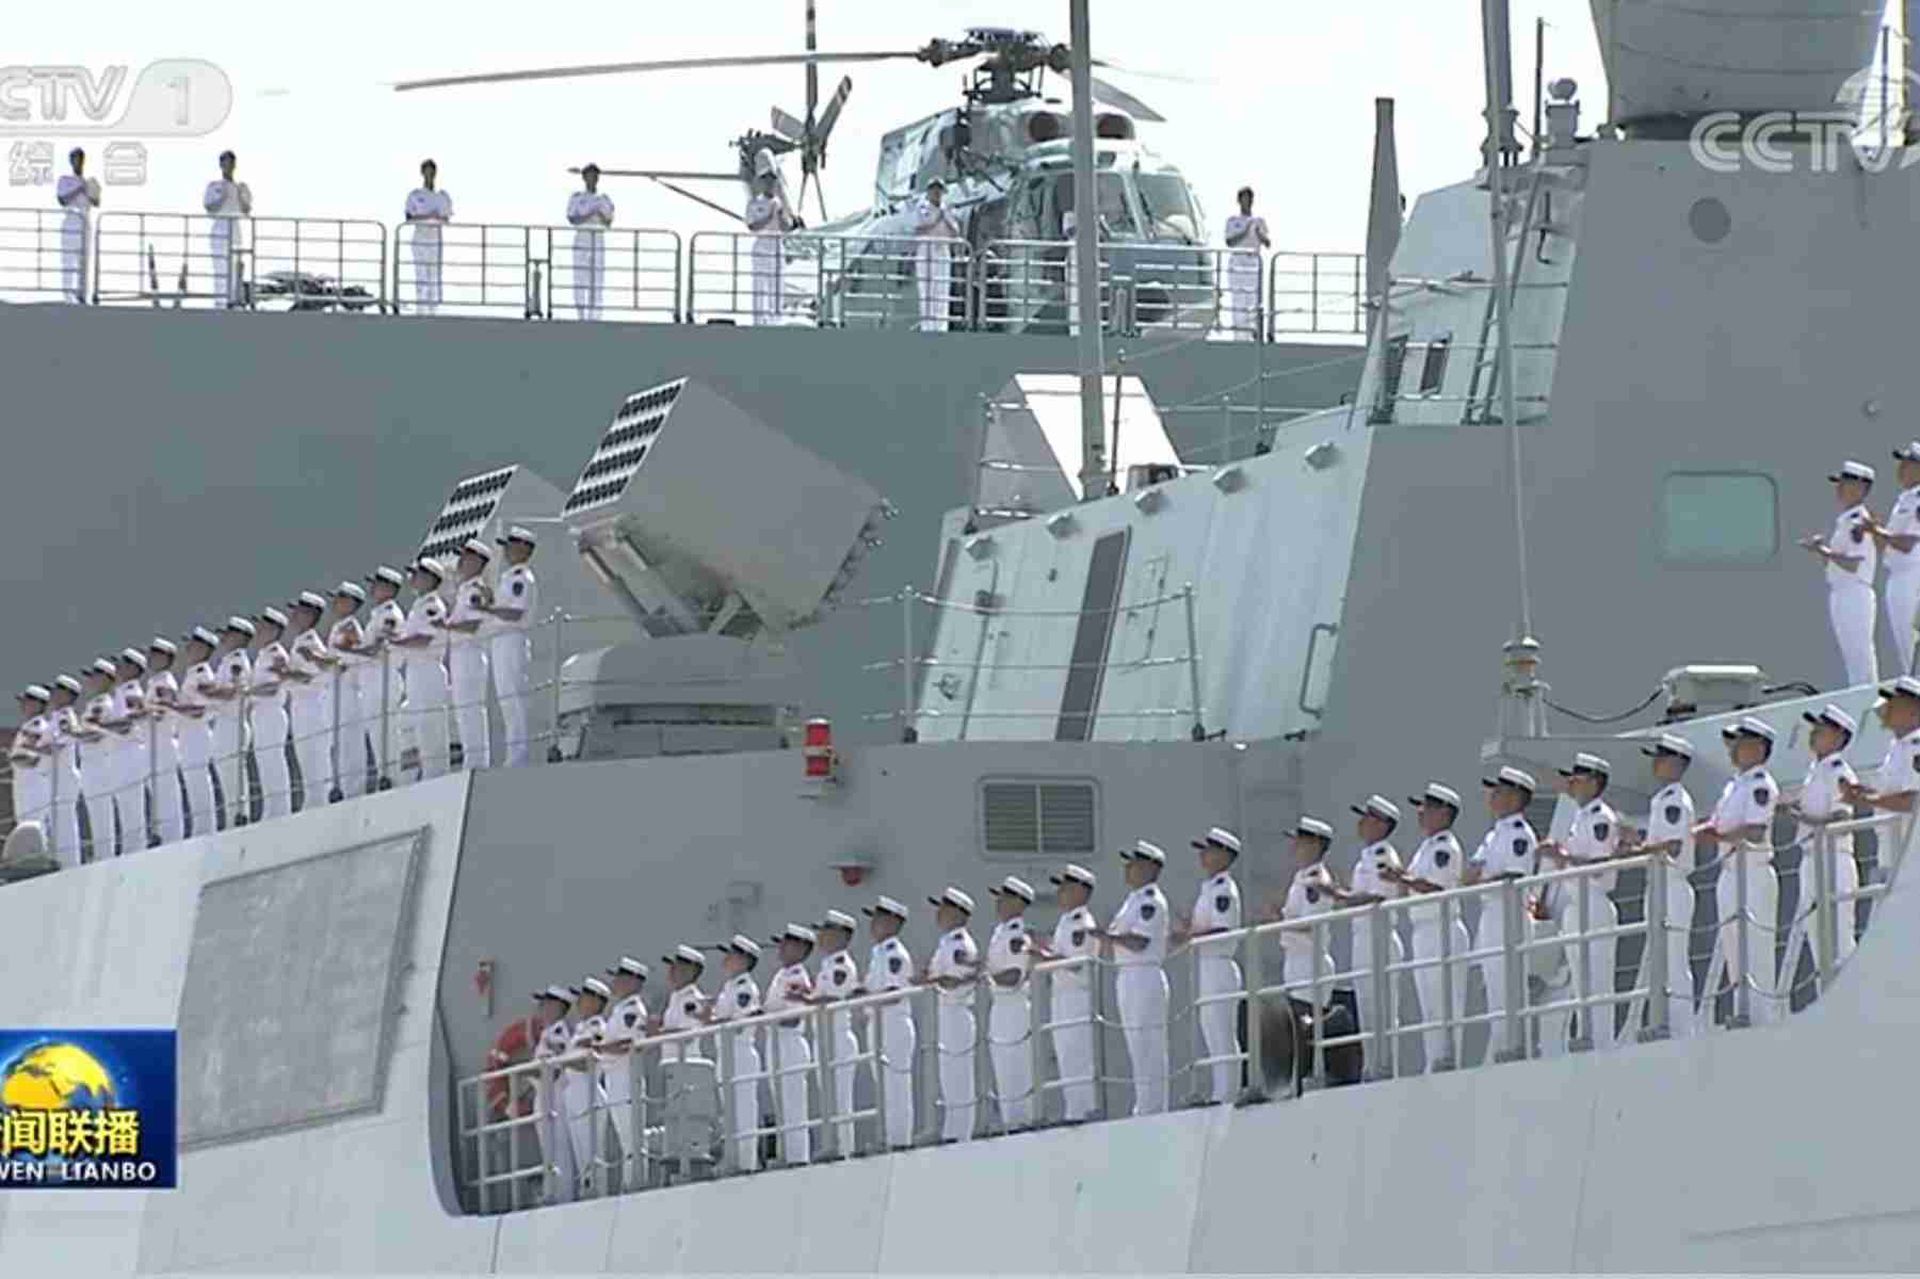 中国央视新闻公开入列现场画面。图为中国海军官兵在新入列的舰艇上。（中国央视截图）